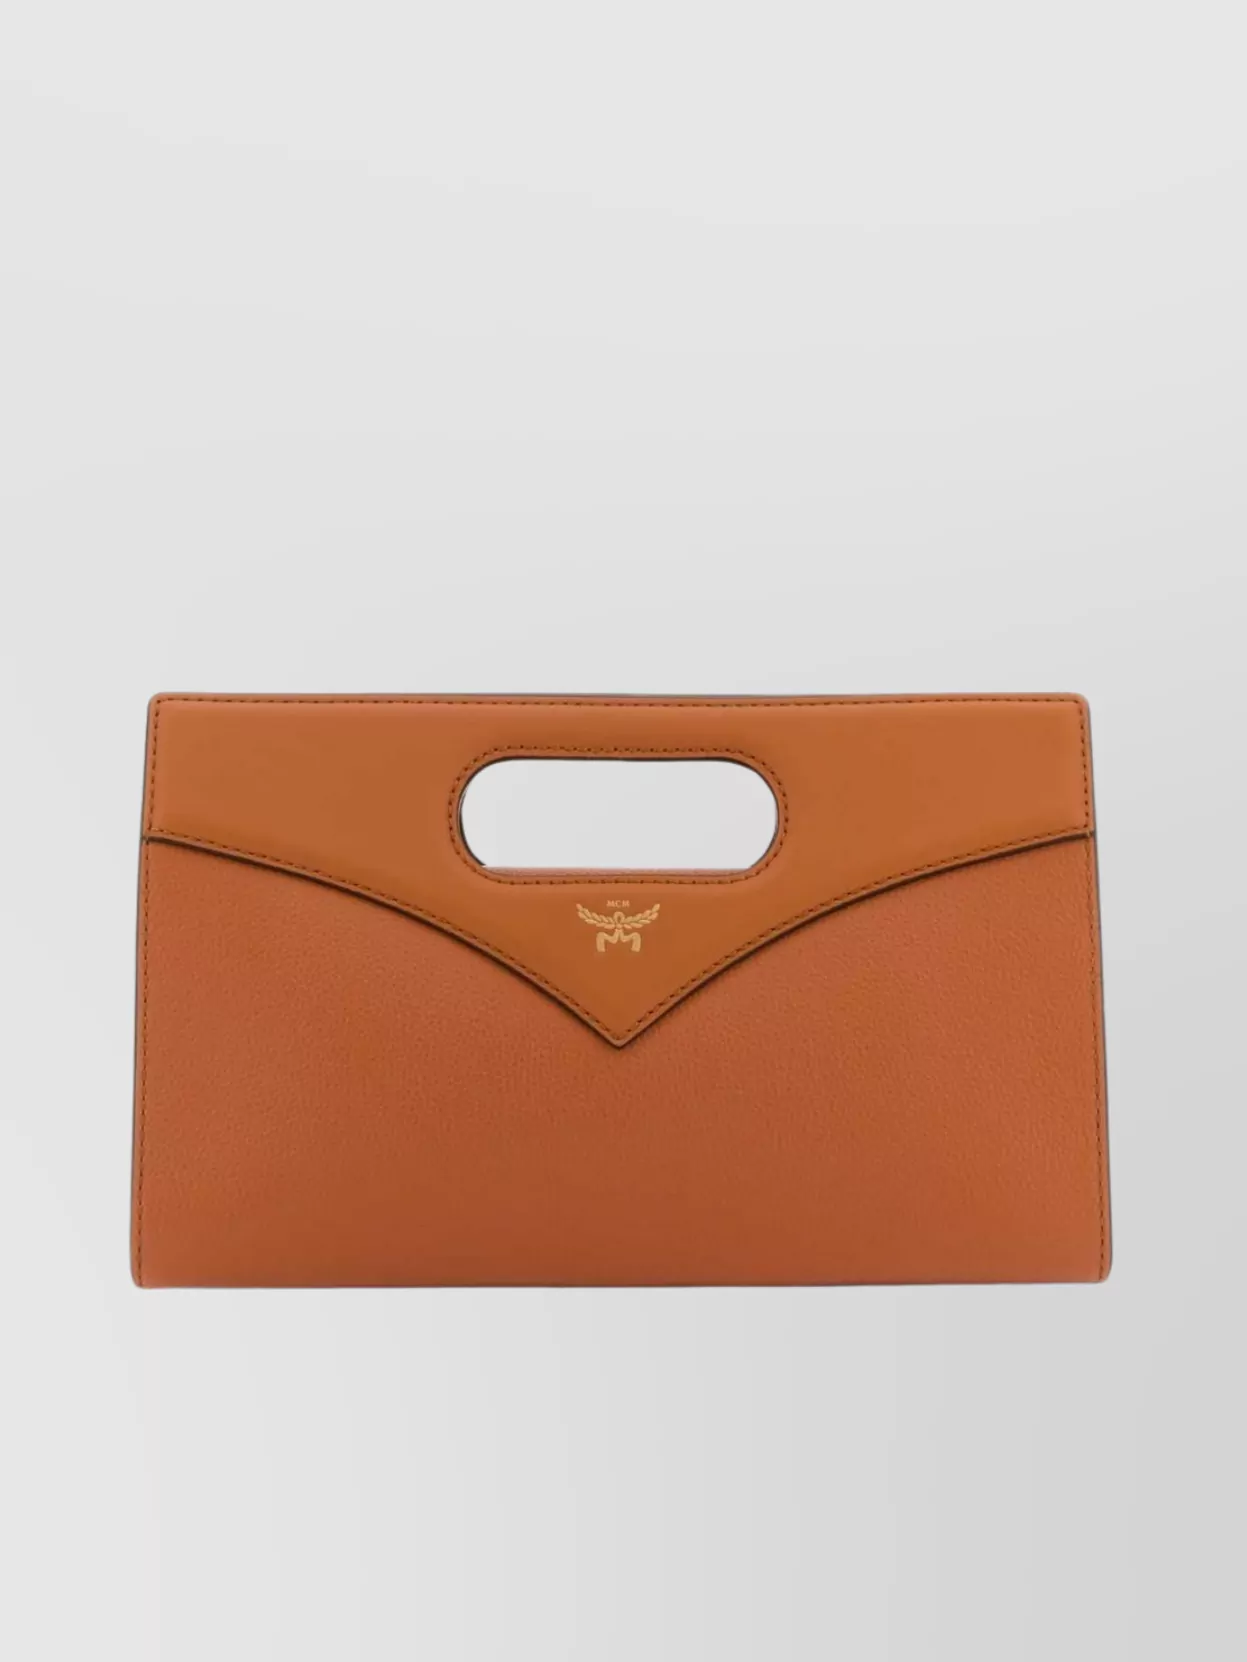 Shop Mcm Structured Envelope Leather Handbag